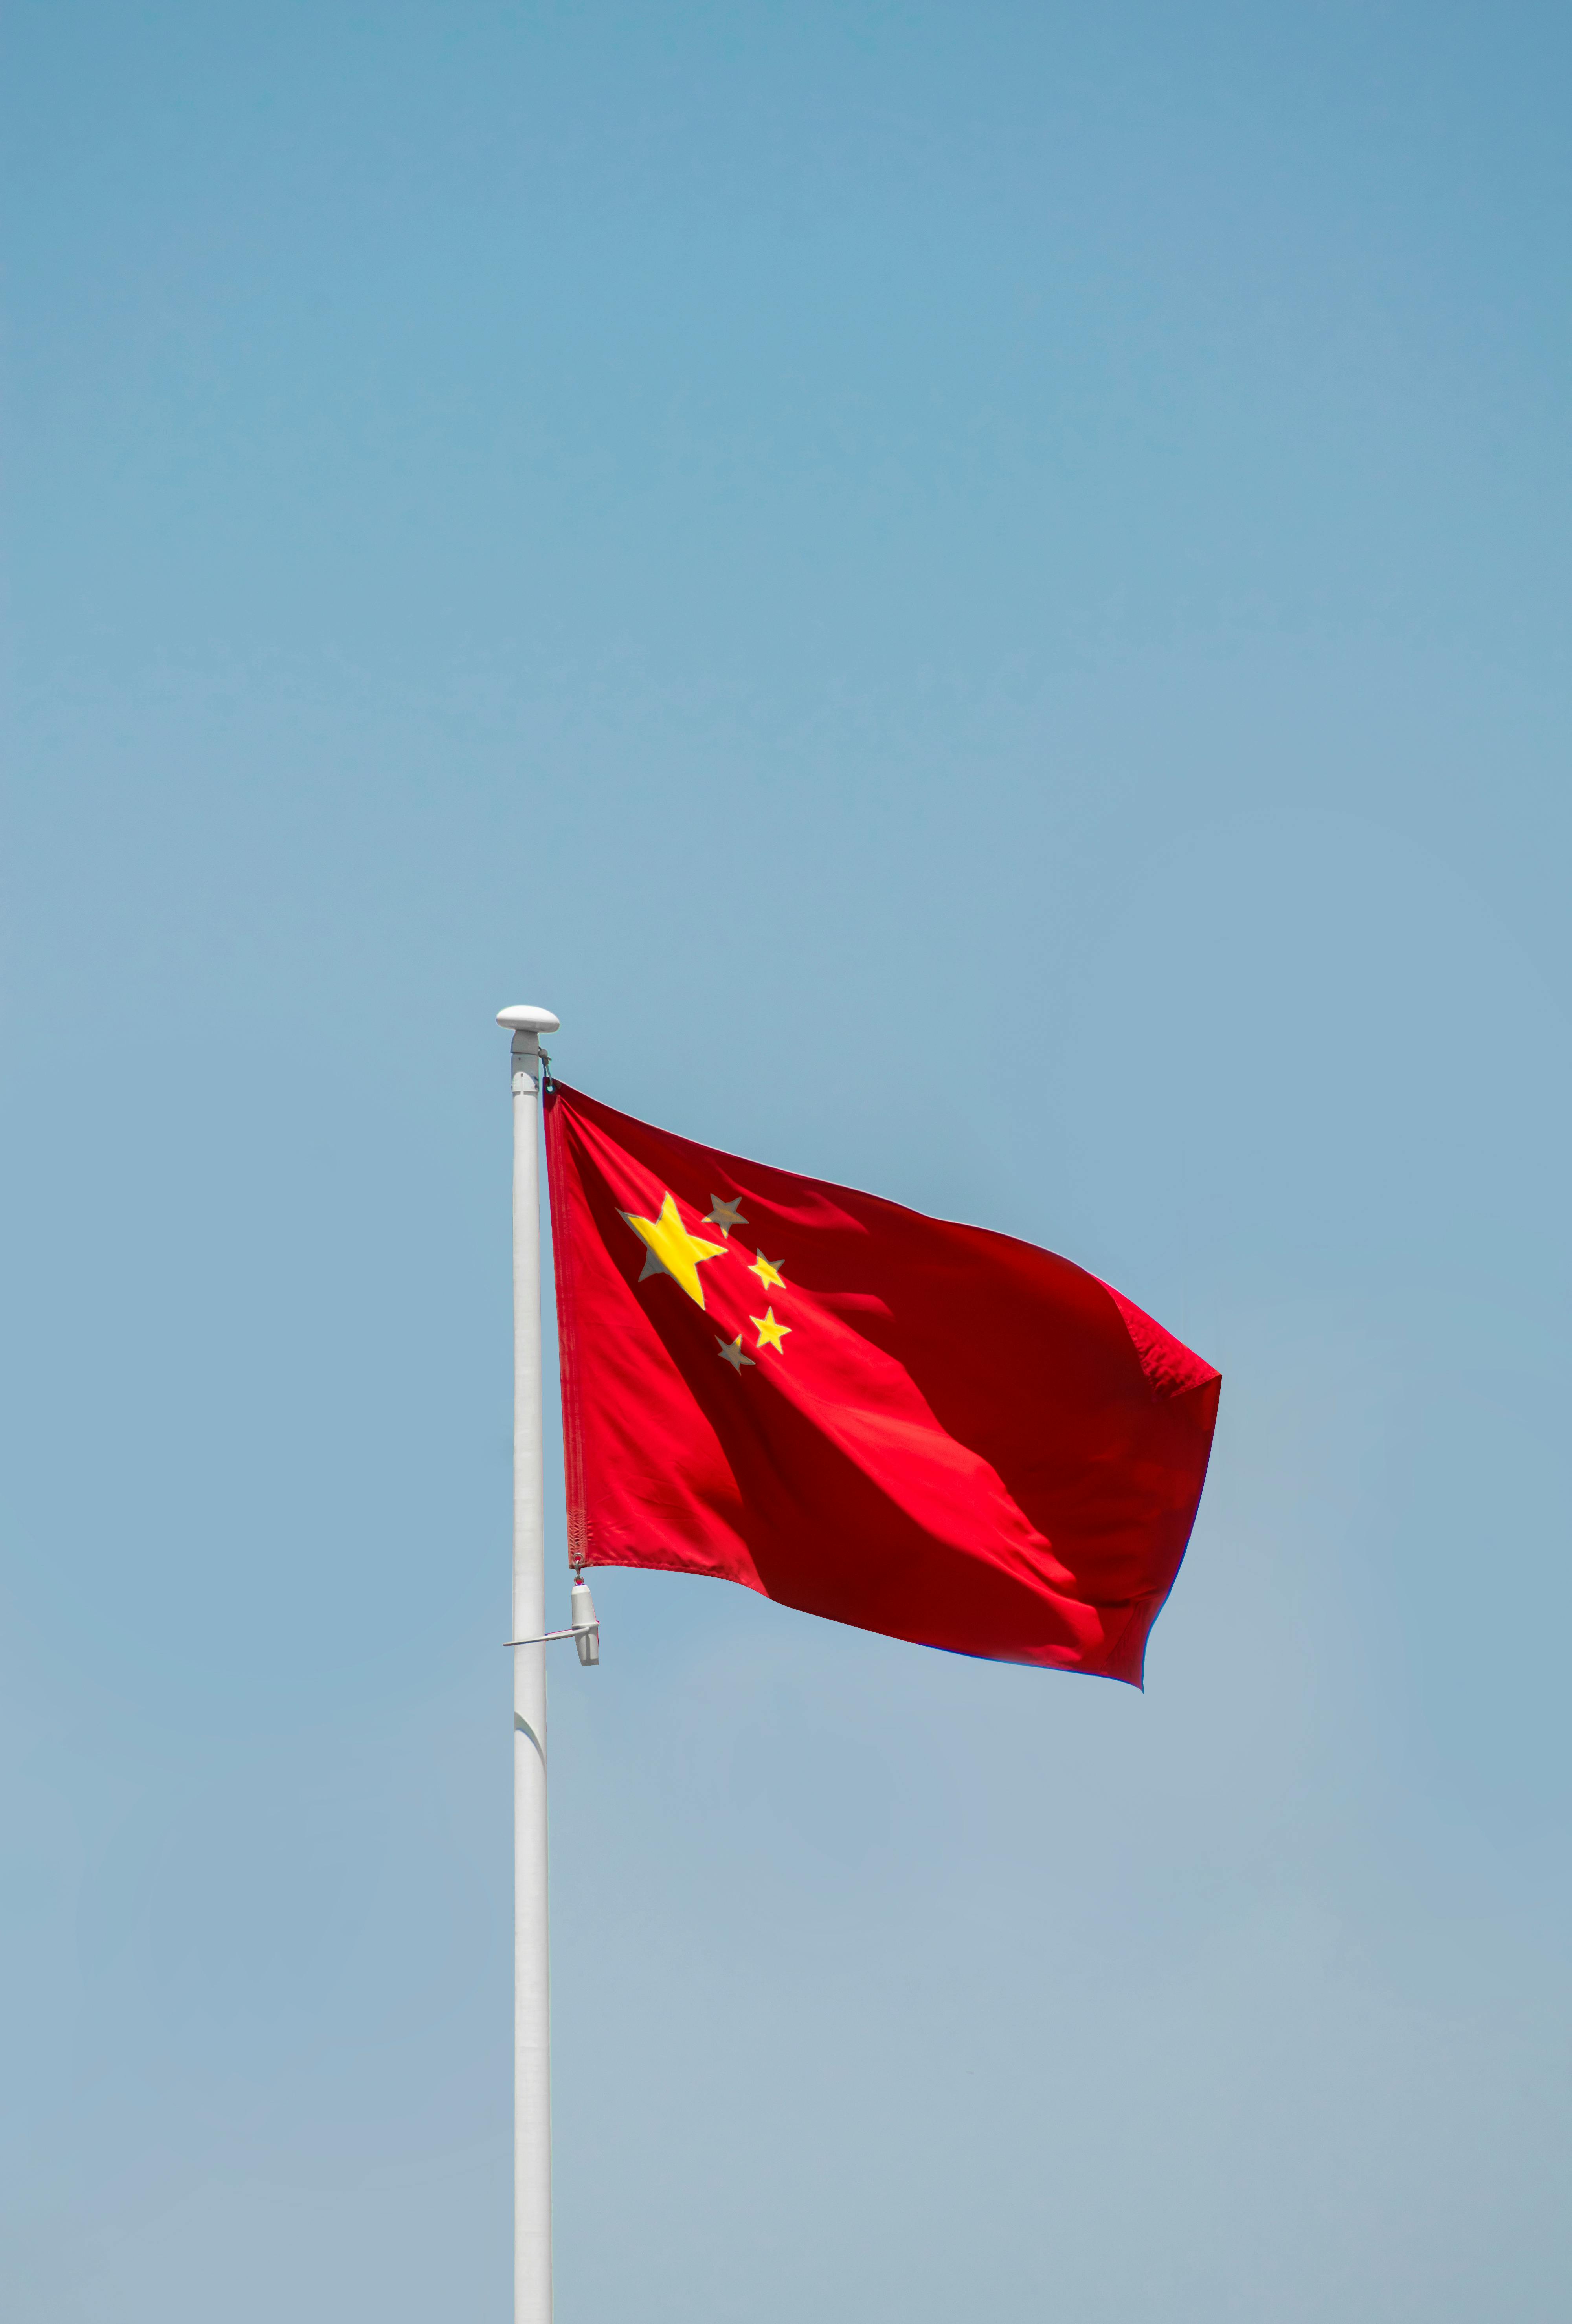 Ảnh đẹp cờ Trung Quốc: Cờ Trung Quốc là một trong những tác phẩm nghệ thuật đẹp nhất trên thế giới, với màu sắc tinh tế và hình ảnh thu hút. Nếu bạn là người yêu thích nghệ thuật và văn hóa Trung Quốc, hãy đến và xem những hình ảnh đẹp về cờ Trung Quốc.